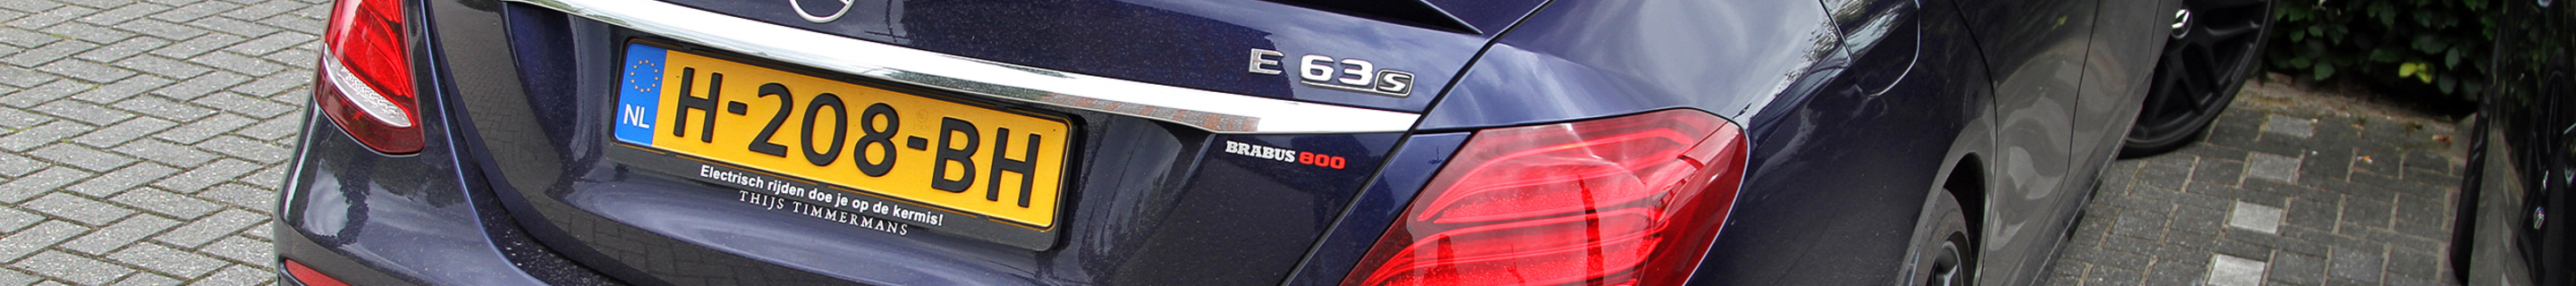 Mercedes-AMG Brabus E B40S-800 W213